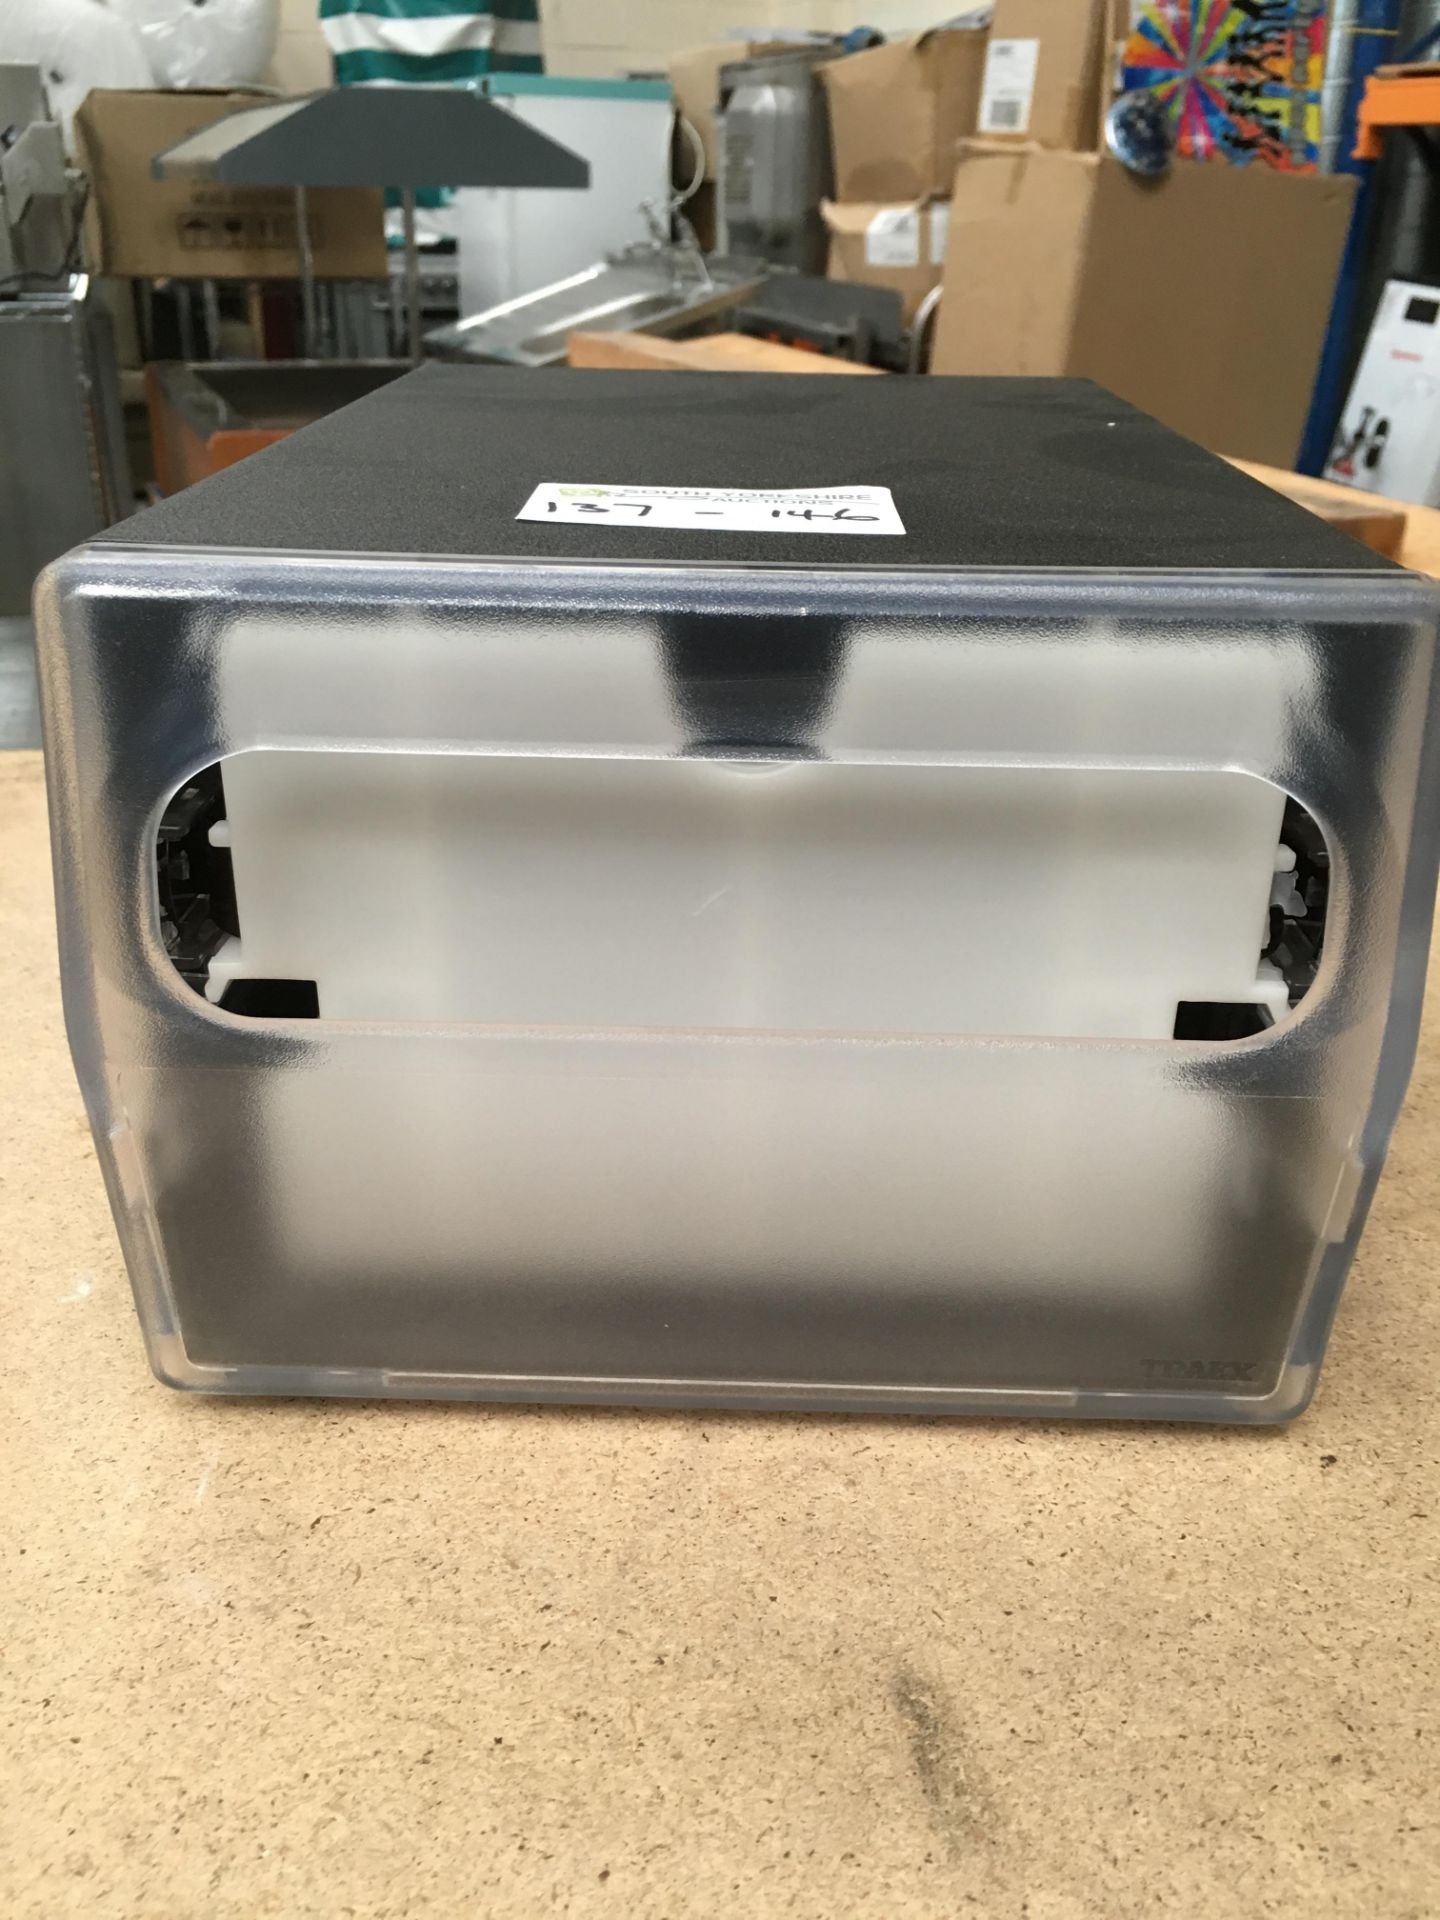 New Boxed Napkin Dispenser - Image 2 of 2